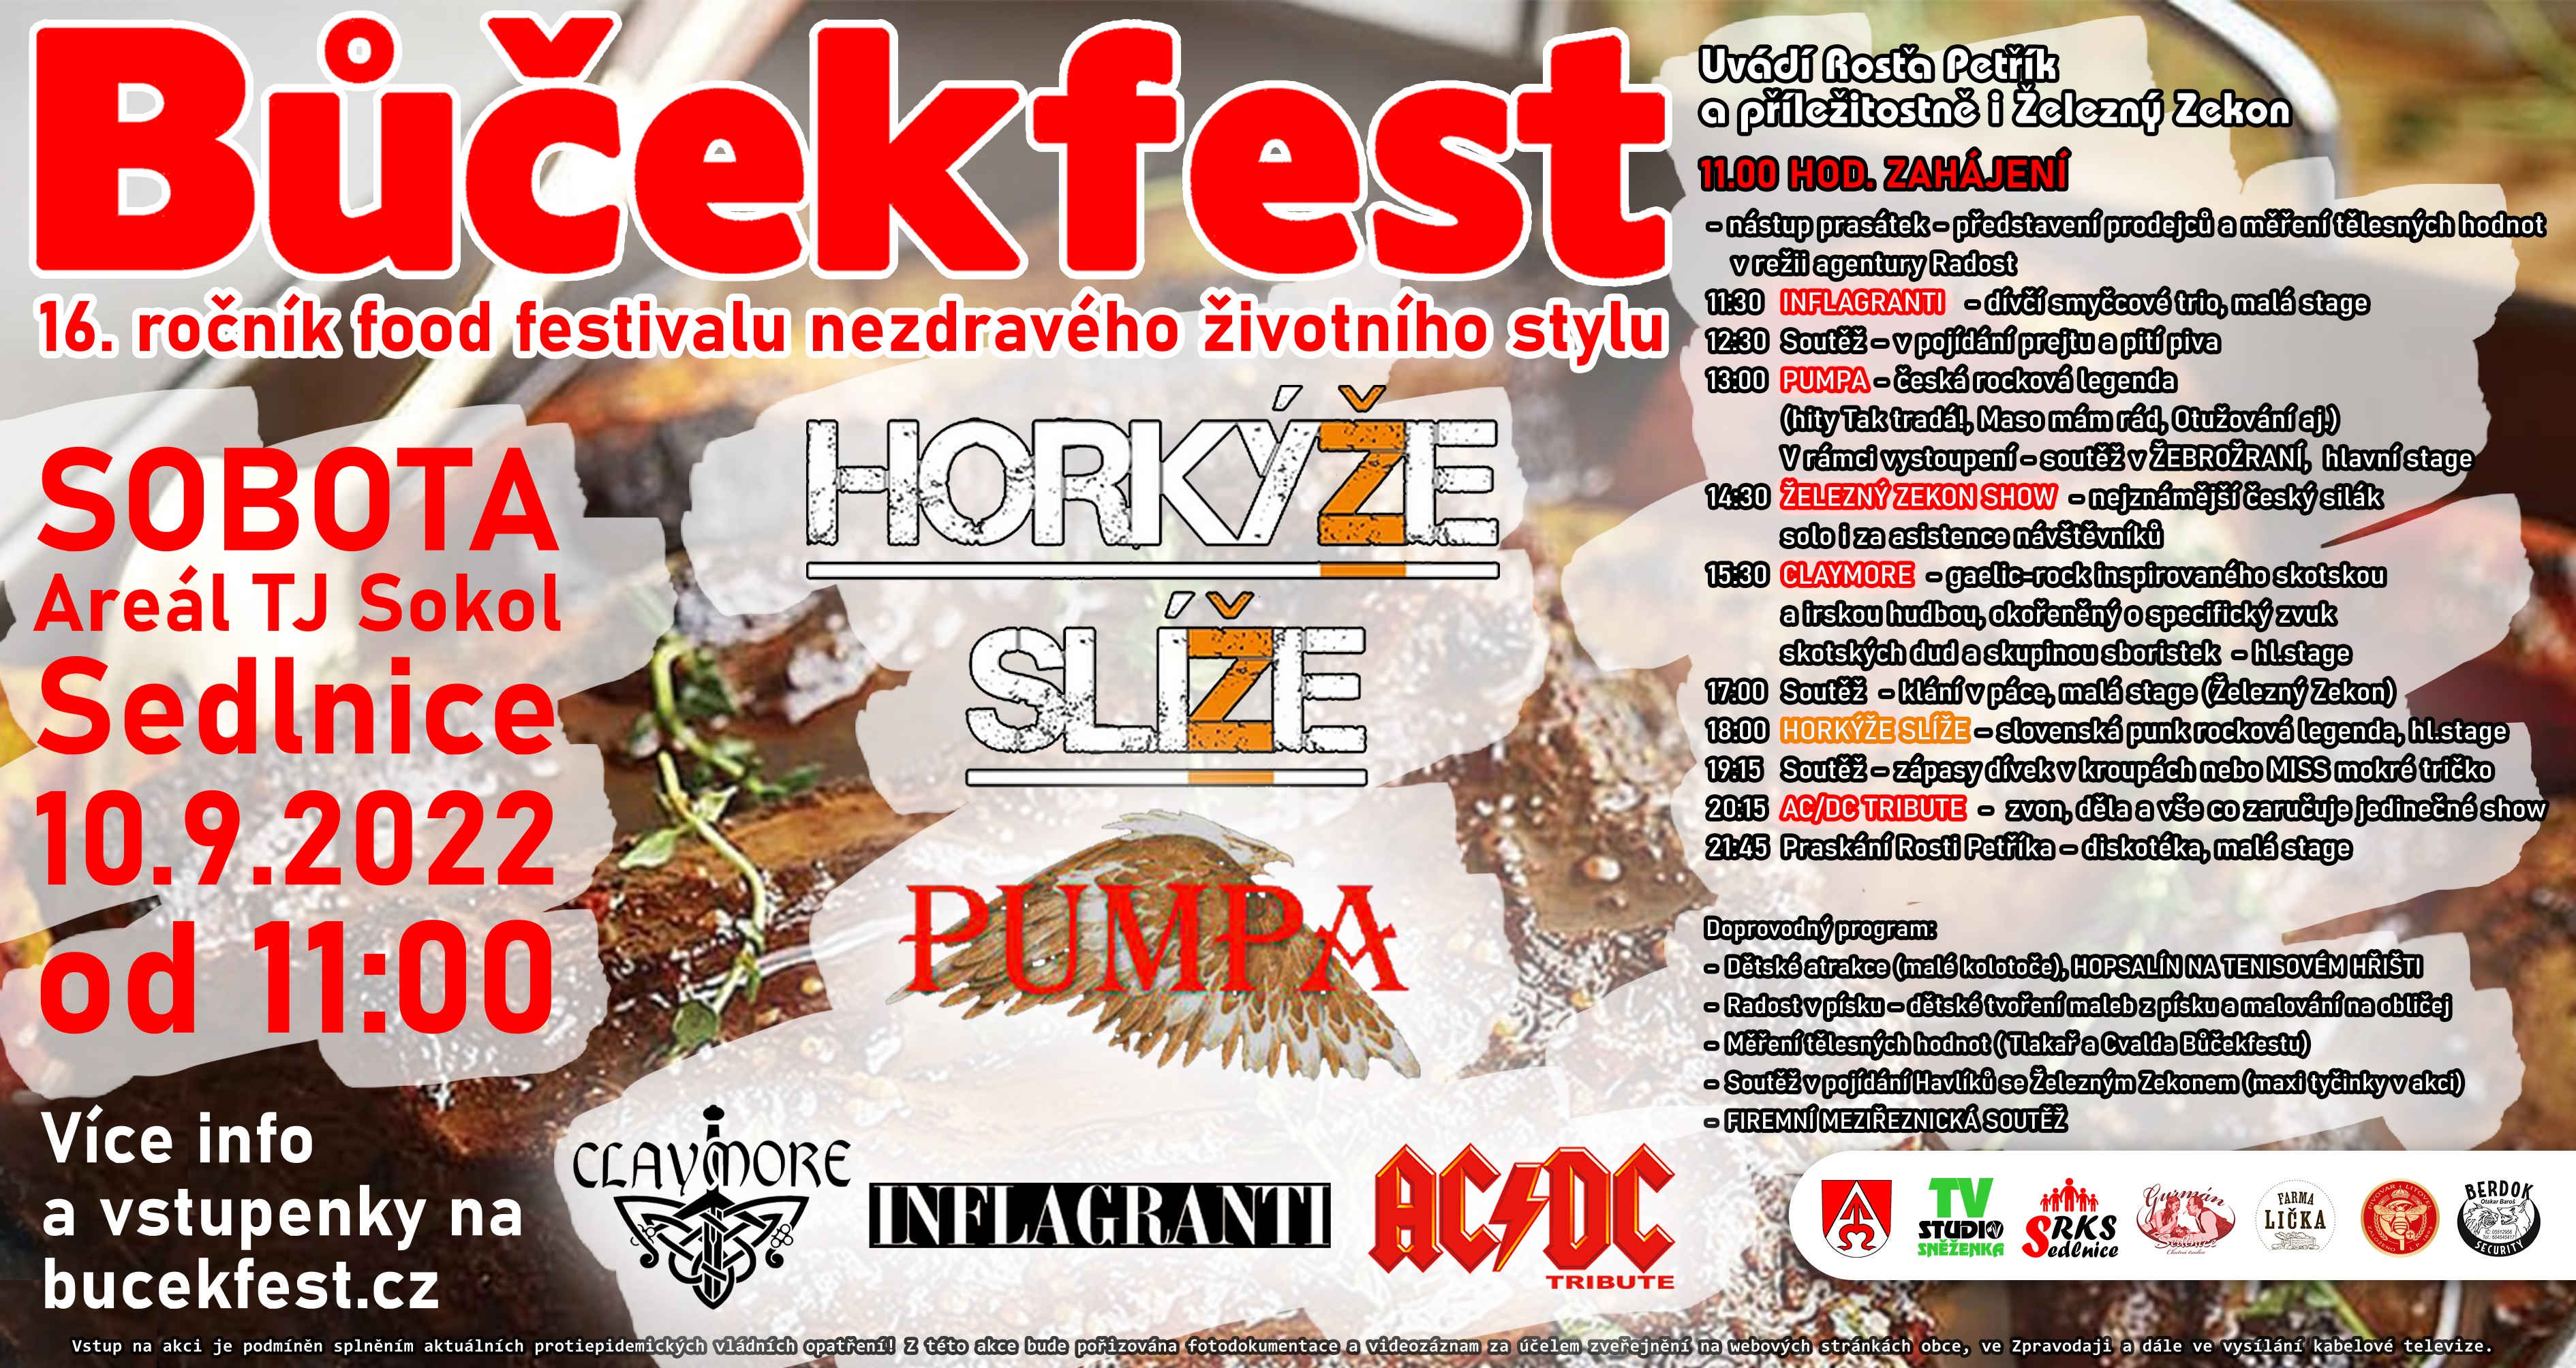 Bùèekfest 2022 - Special banner